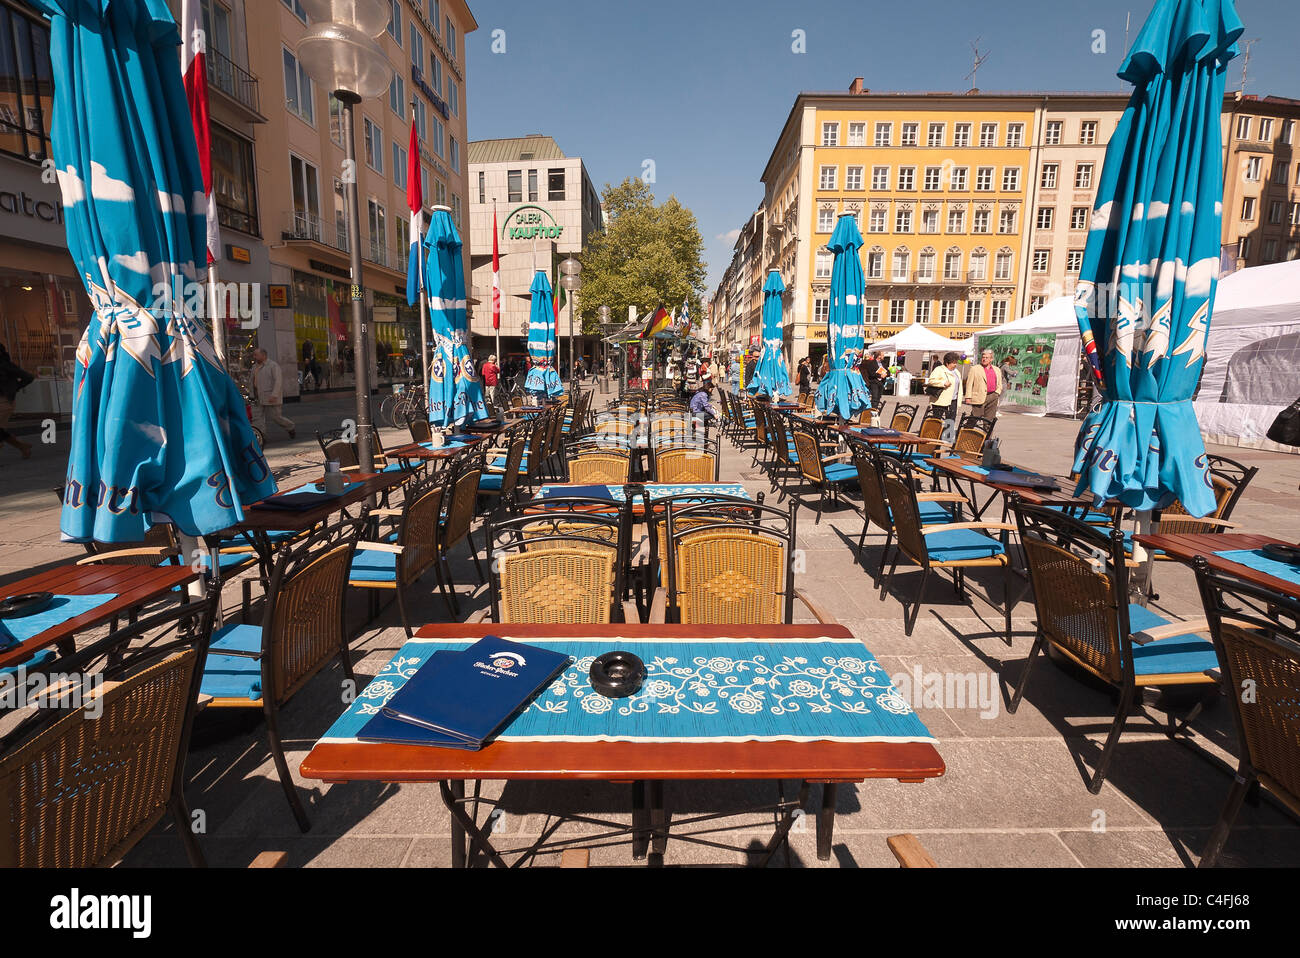 Tabelle configurate per il pranzo con i colori bavaresi in un cafe' all'aperto sulla Marienplatz, la piazza centrale di Monaco di Baviera, Germania. Foto Stock